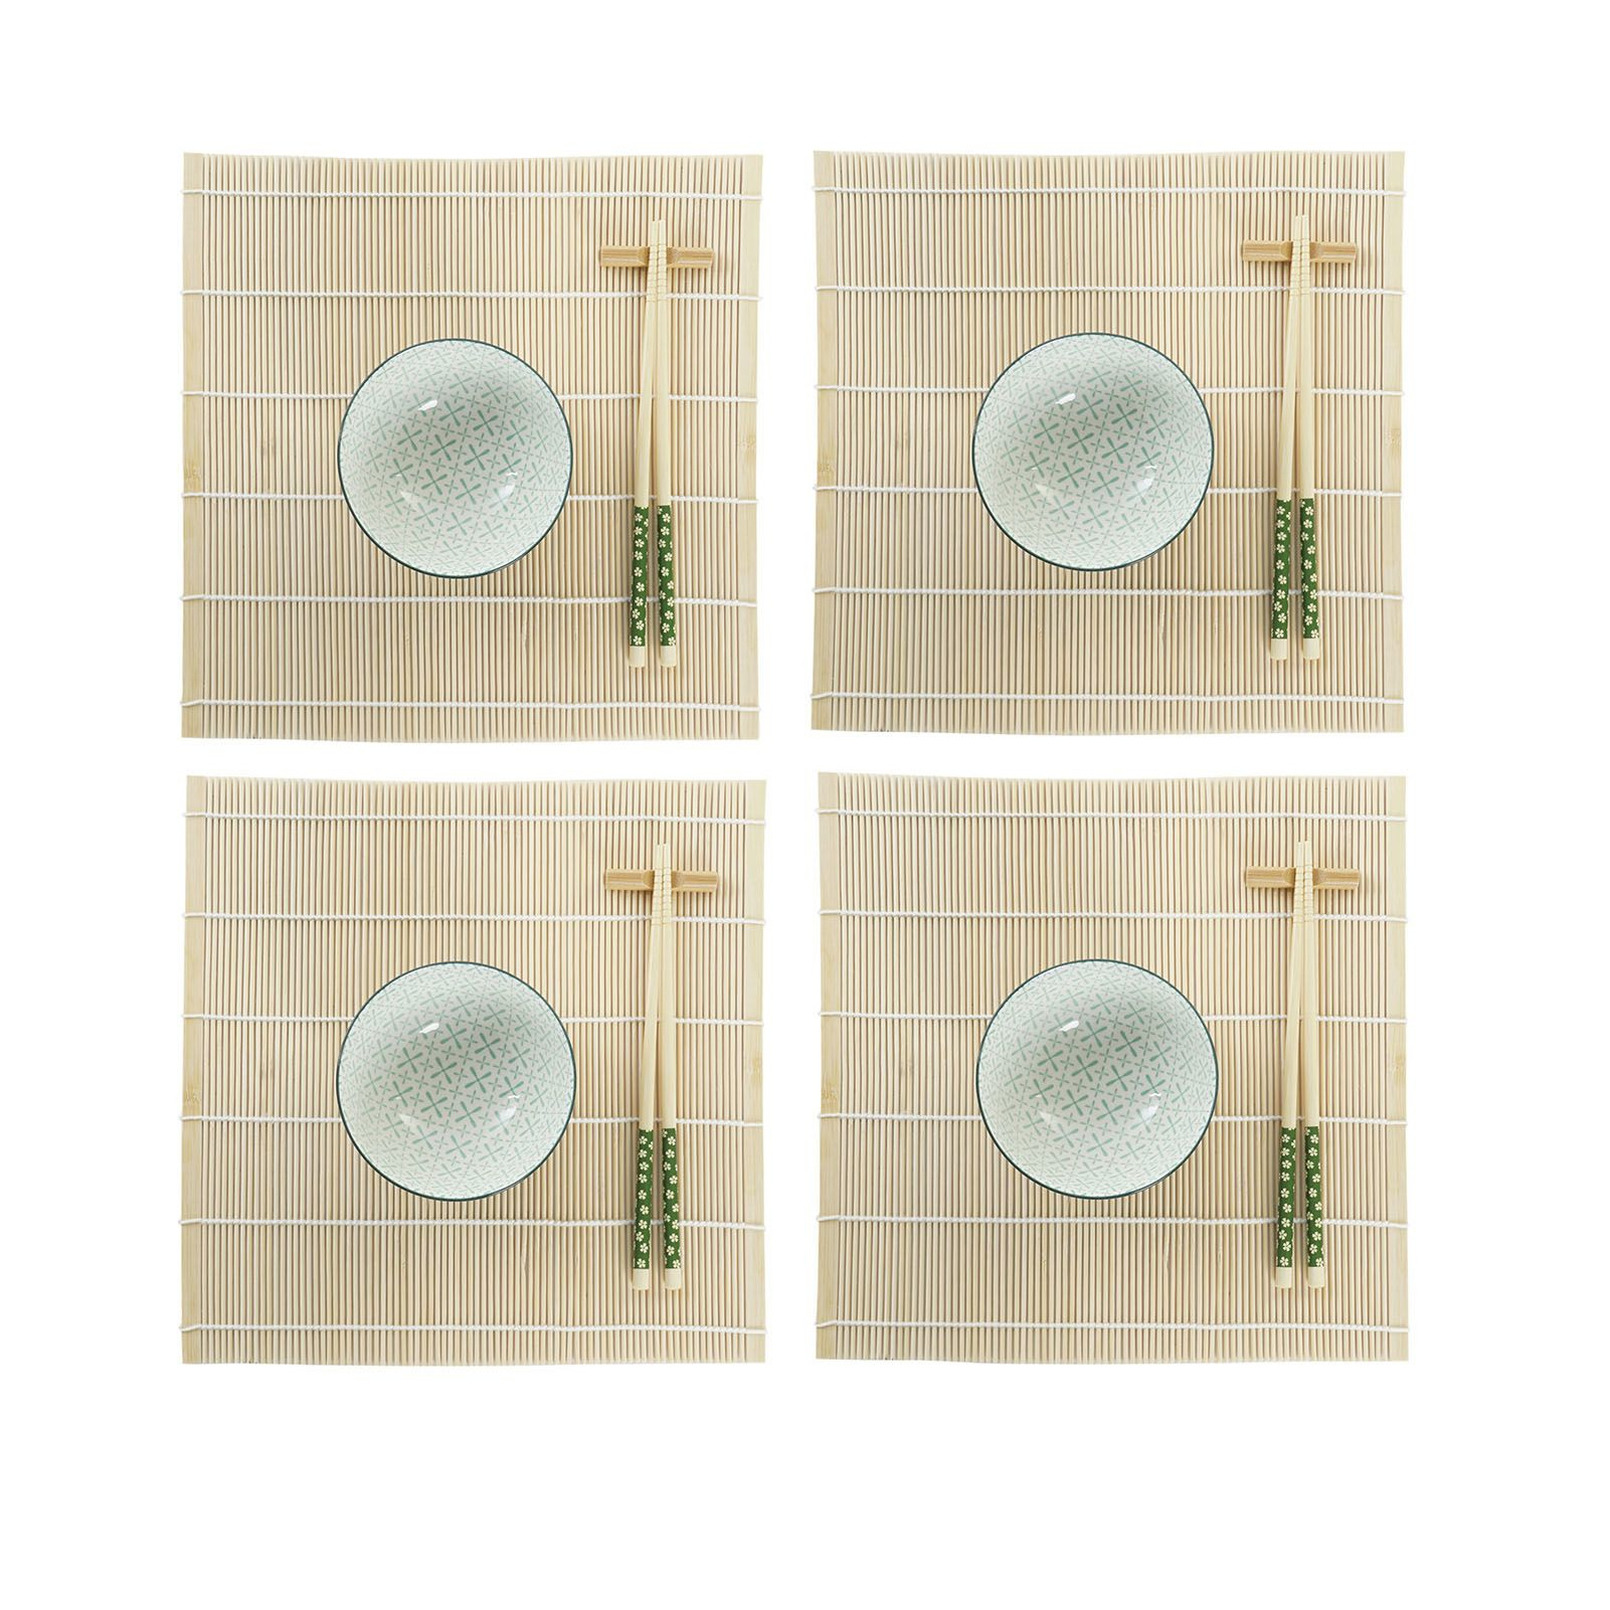 Items 16-delige sushi serveer set aardewerk voor 4 personen groen/wit -